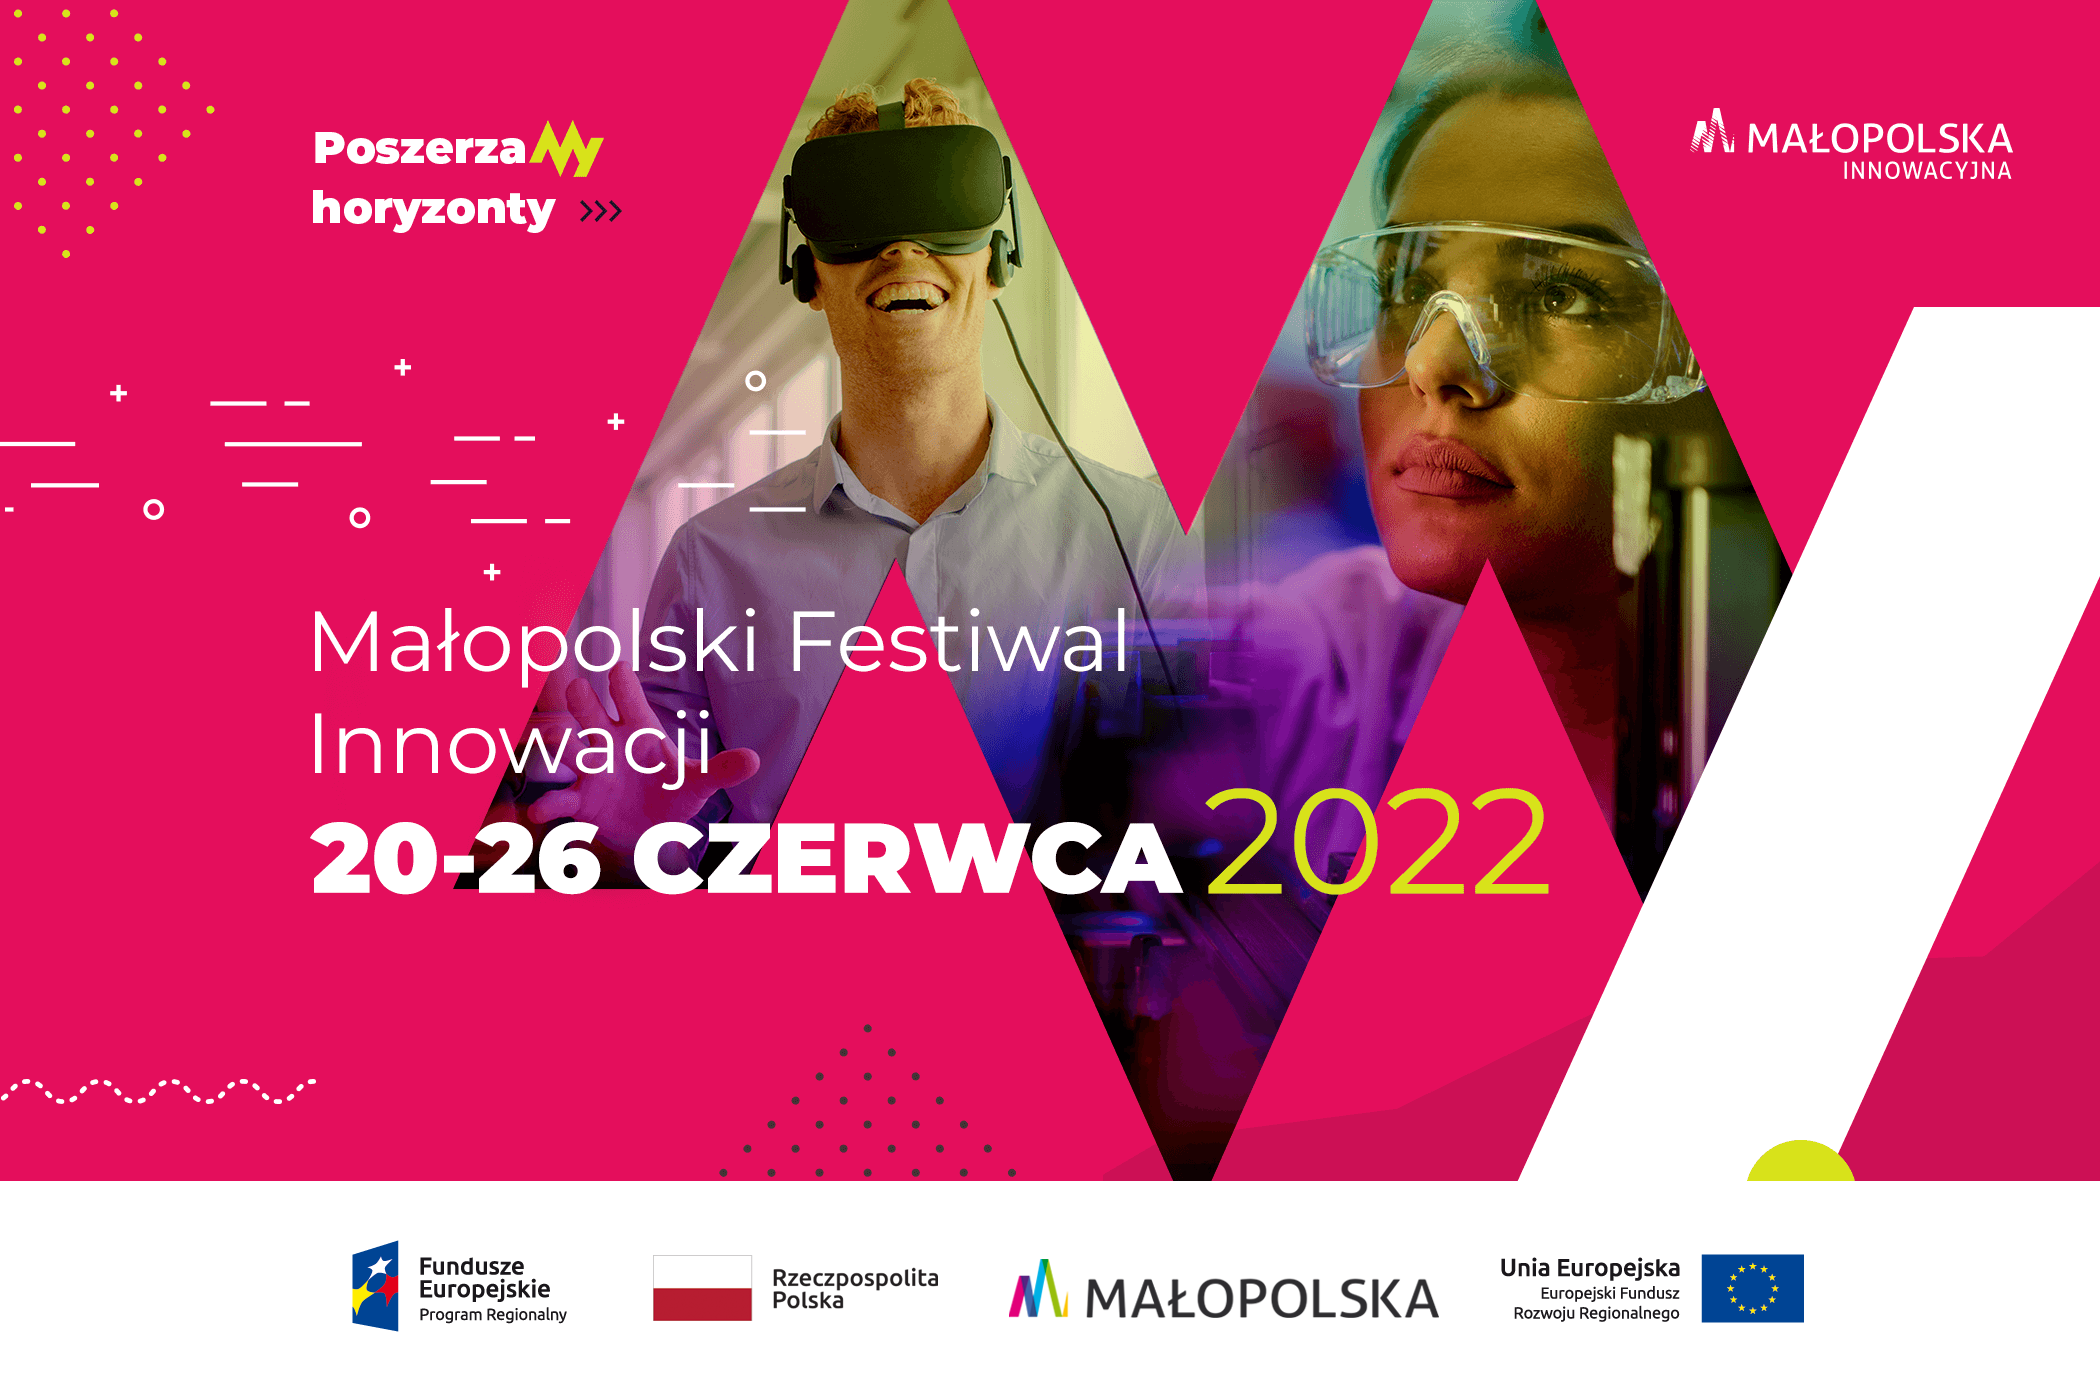 baner promujący Małopolski Festiwal Innowacji